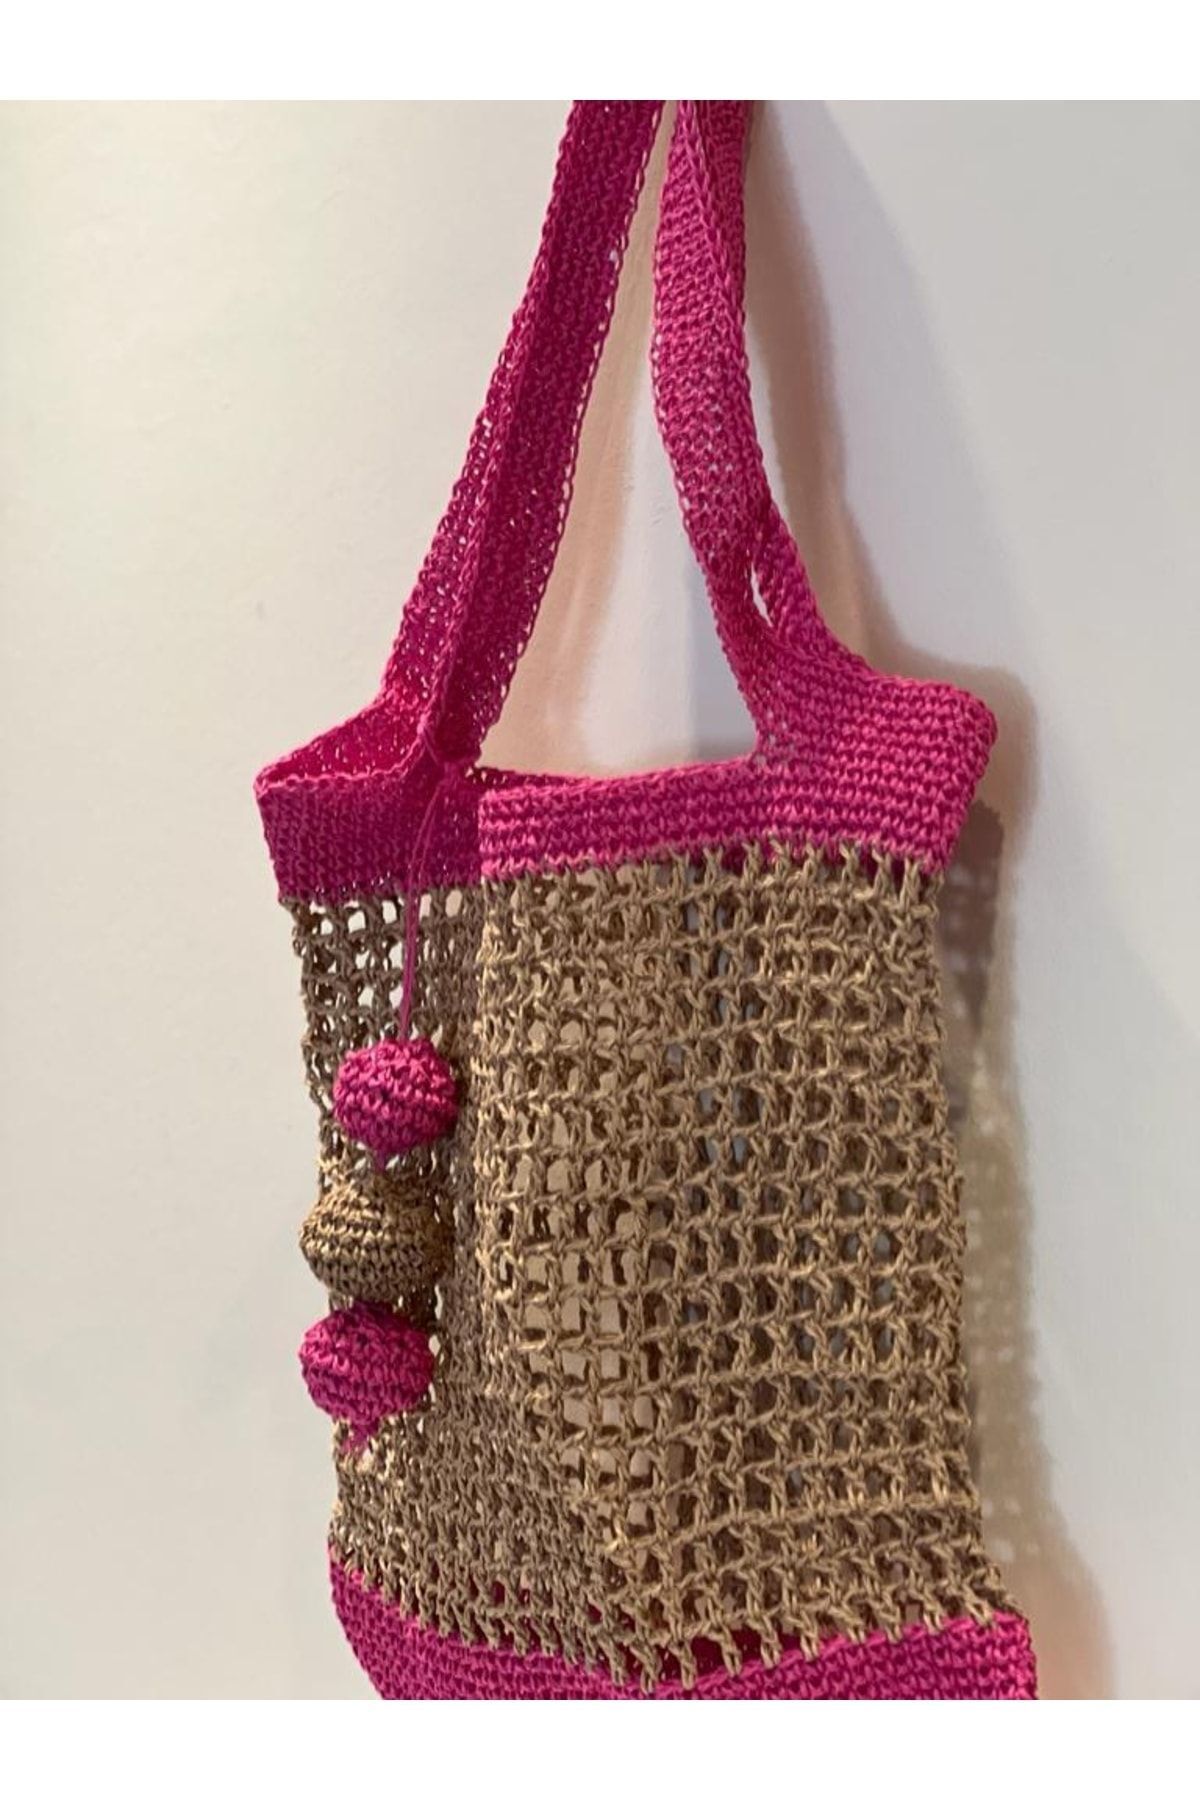 pixiperi Bohem, Hasır Dolgulu El Örgüsü Crochet Ponpon Süslü Hasır Fuşya-pembe Askılı Kadın Omuz Çantası